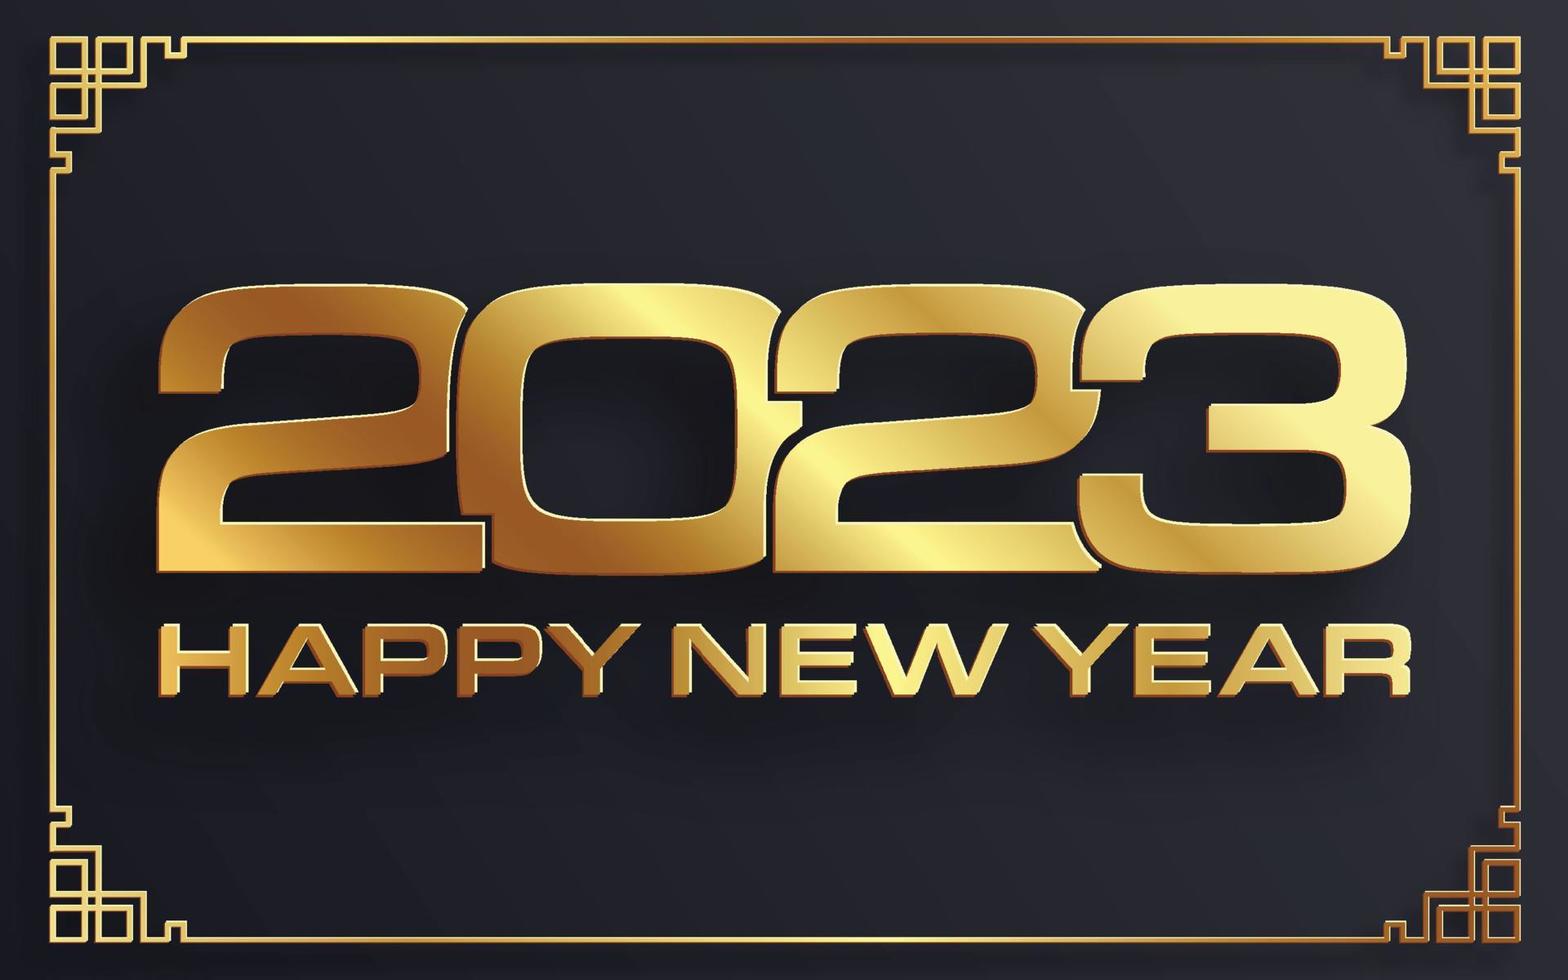 felice anno nuovo 2023, motivo festivo su sfondo colorato per biglietto d'invito, buon natale, felice anno nuovo 2023, biglietti di auguri vettore